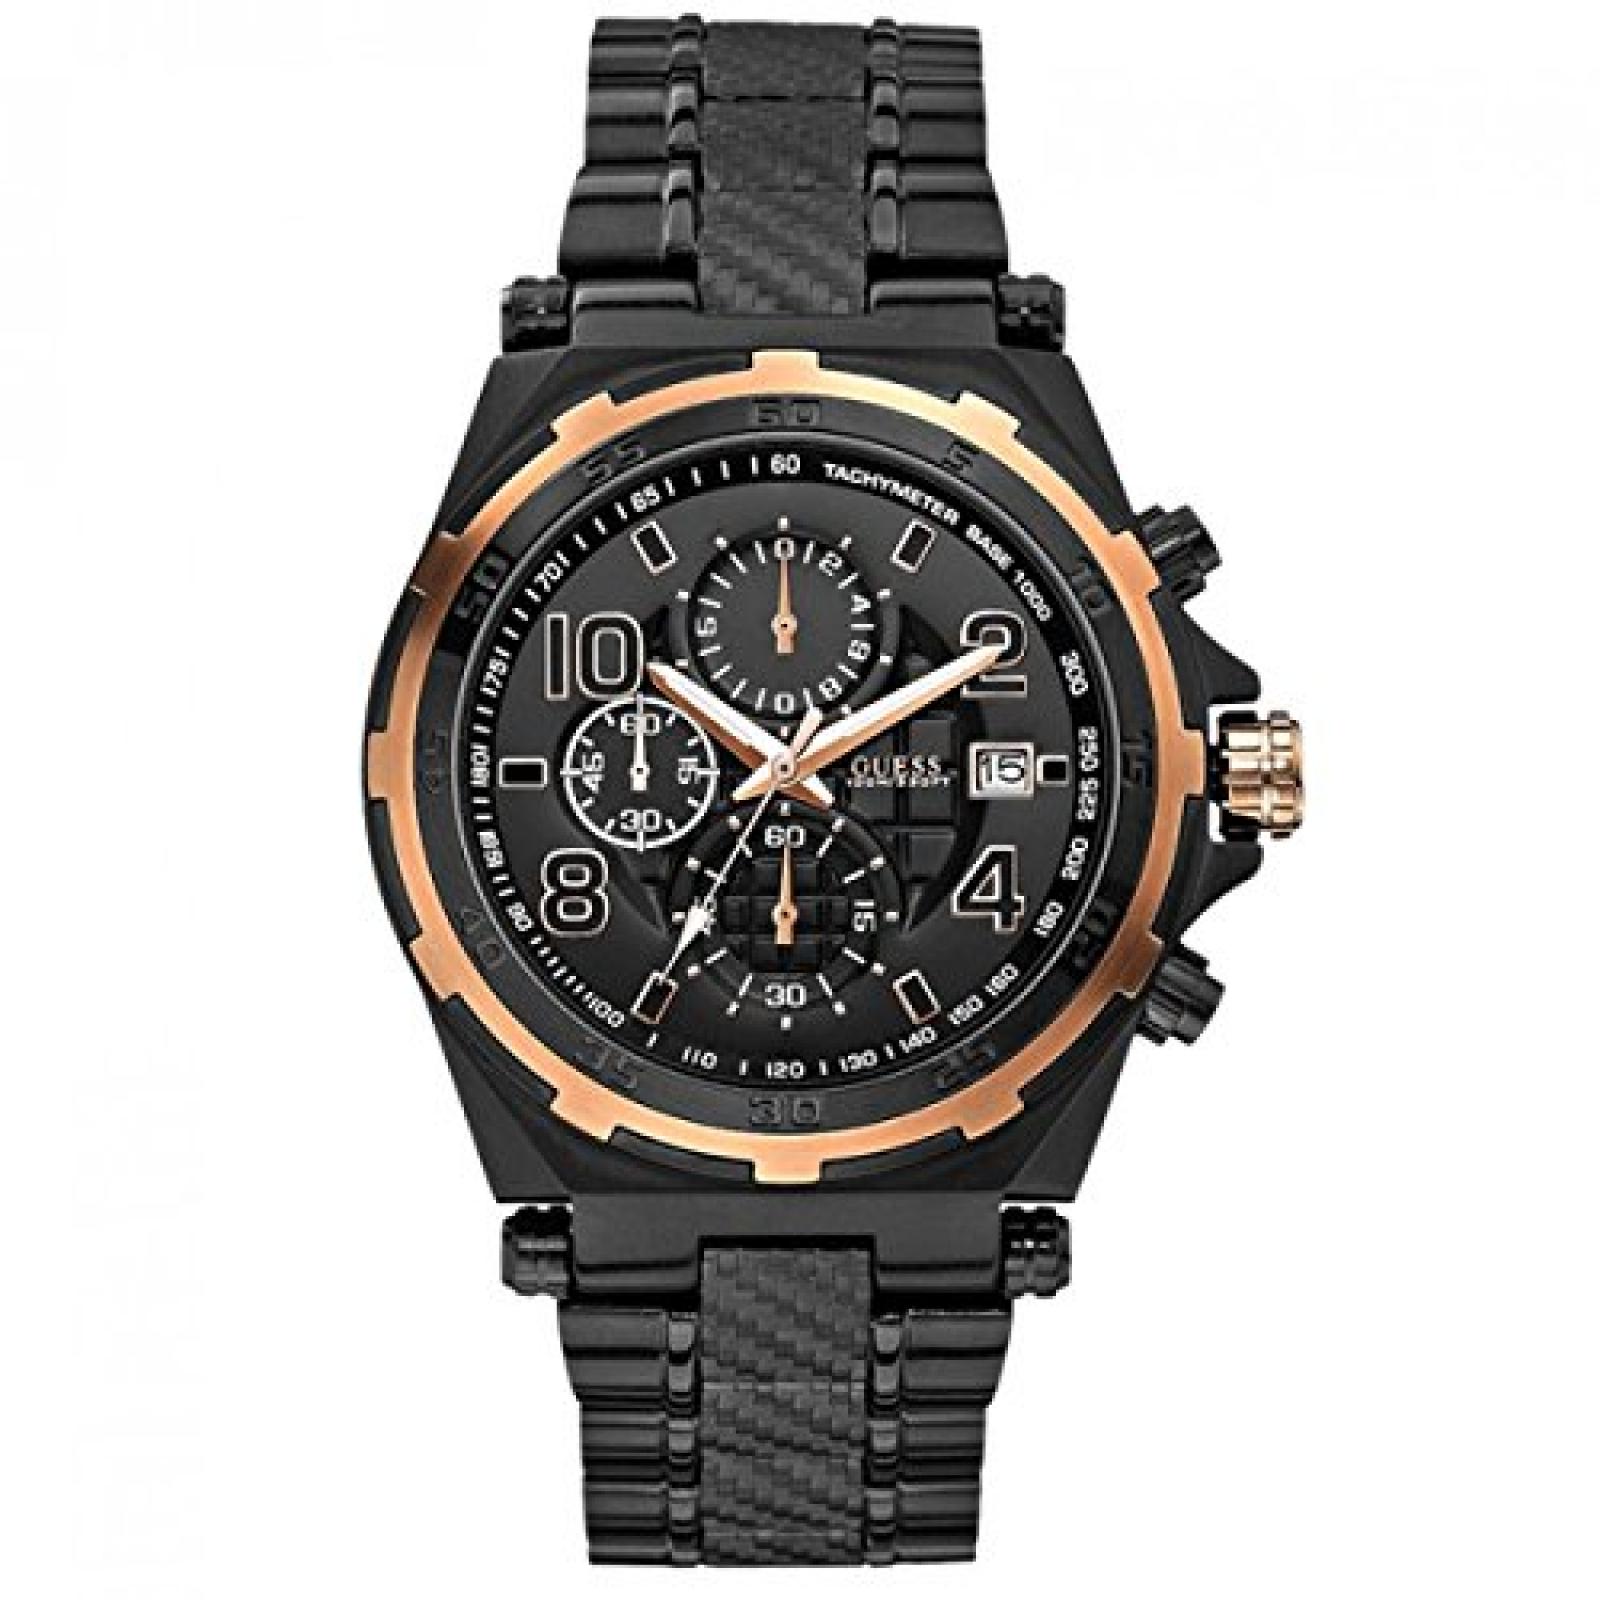 Guess Herren-Armbanduhr XL Chronograph Quarz Edelstahl beschichtet W0243G2 